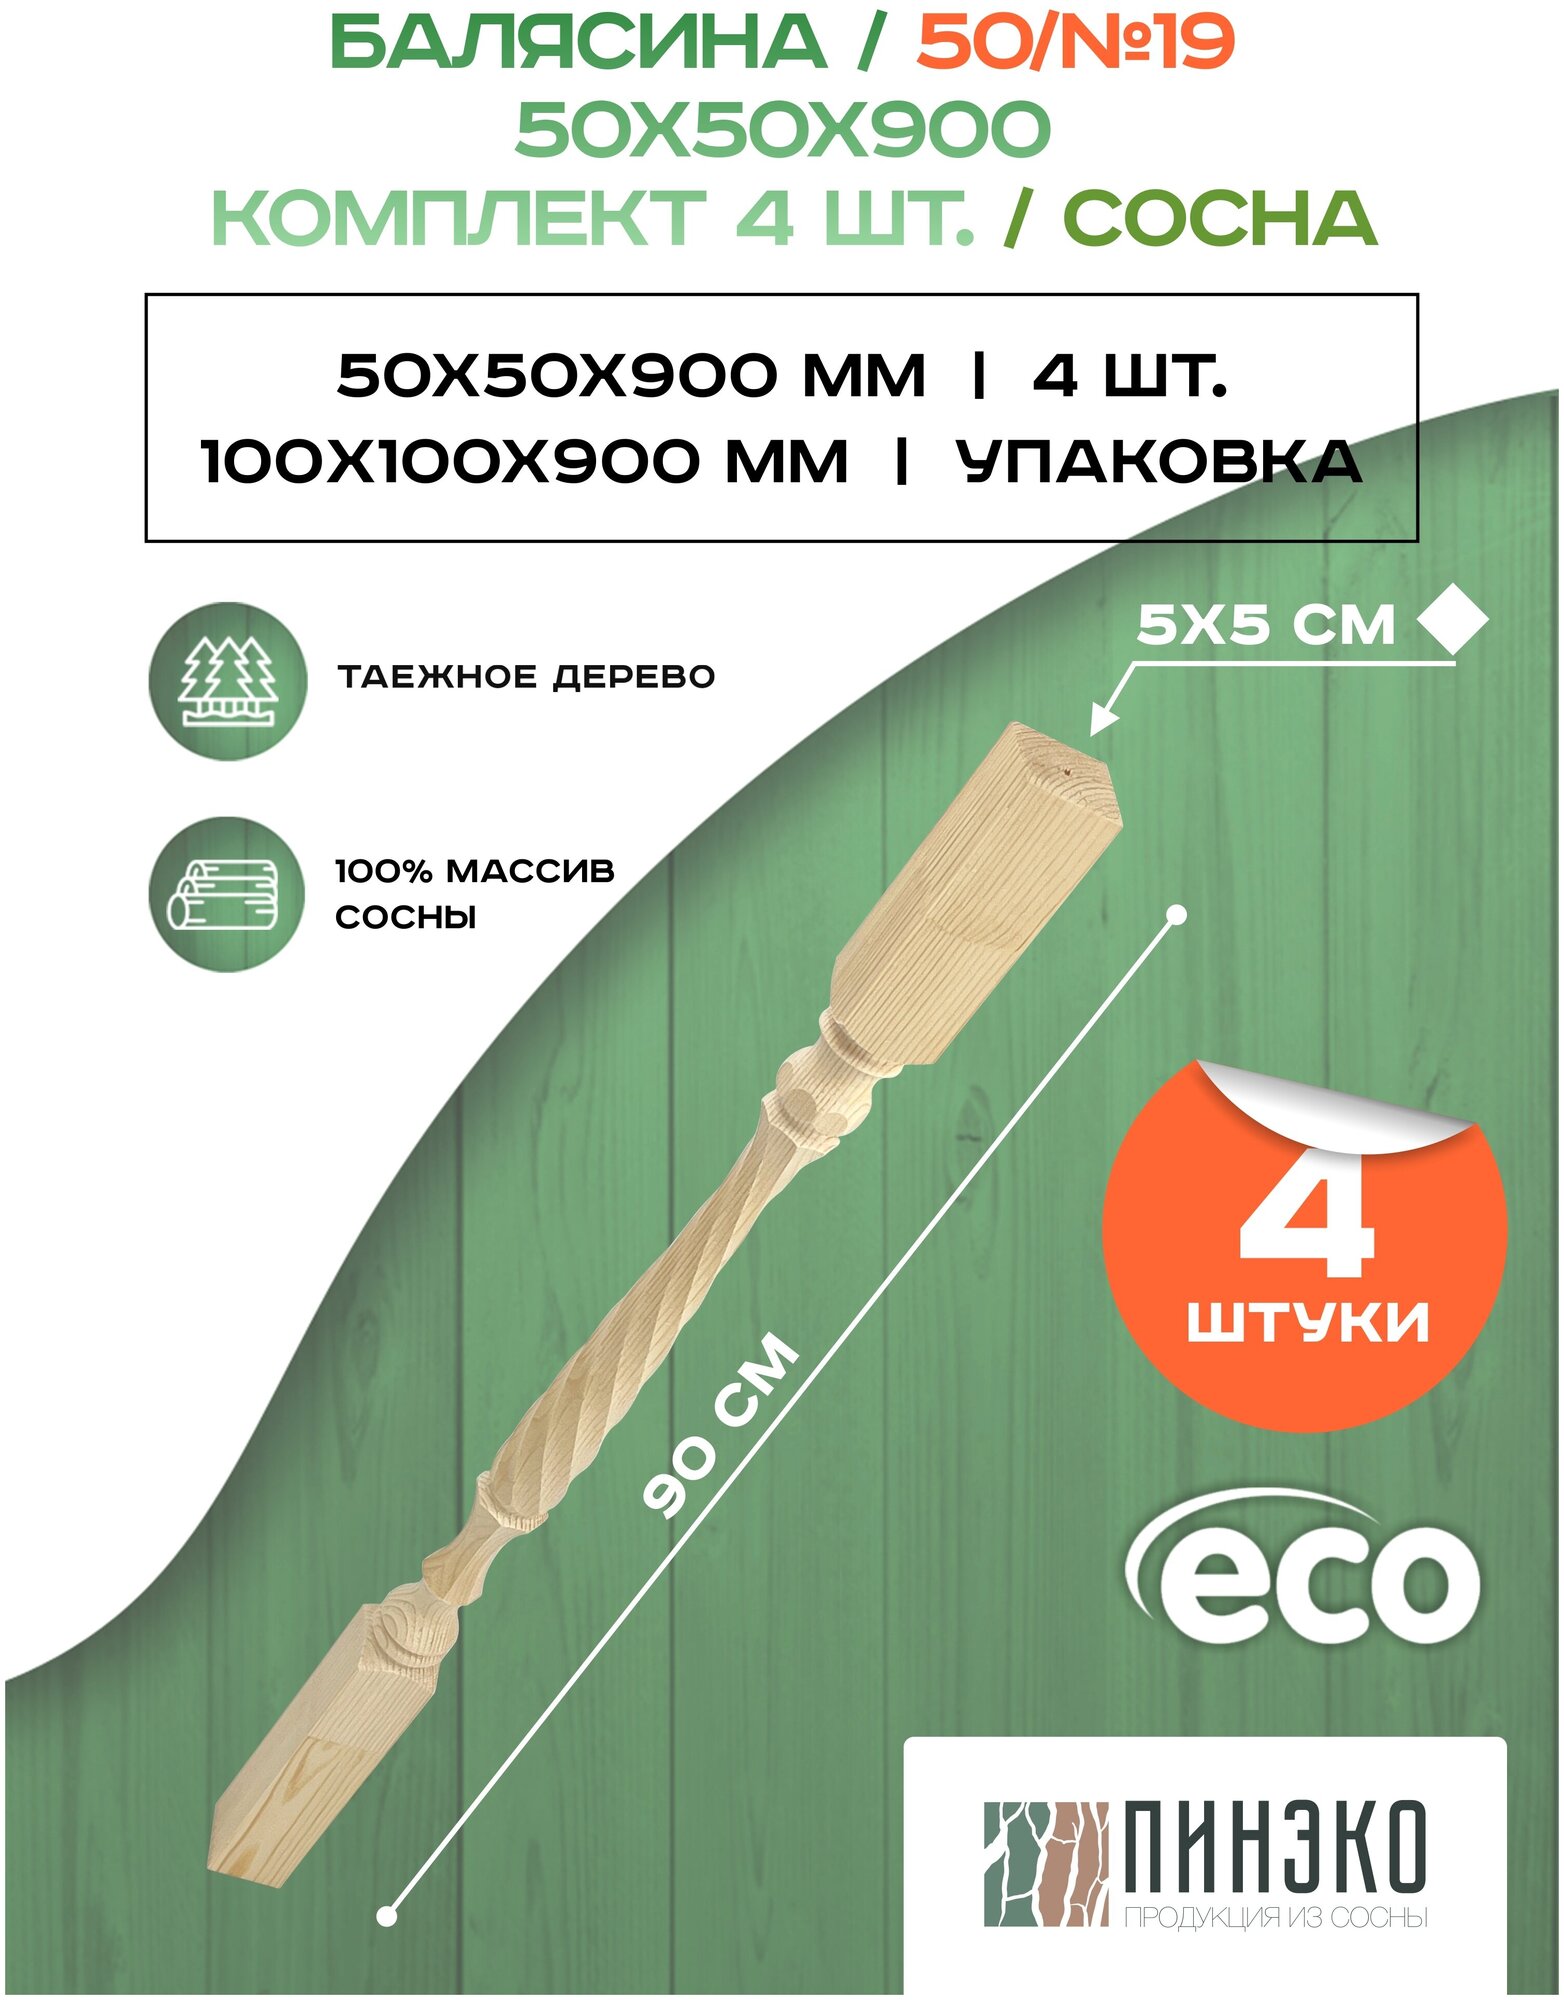 Набор 4 балясины деревянные 900х50х50мм / сращенная / ограждение для лестницы балюстрада из сосны премиум АА модель 50AN19